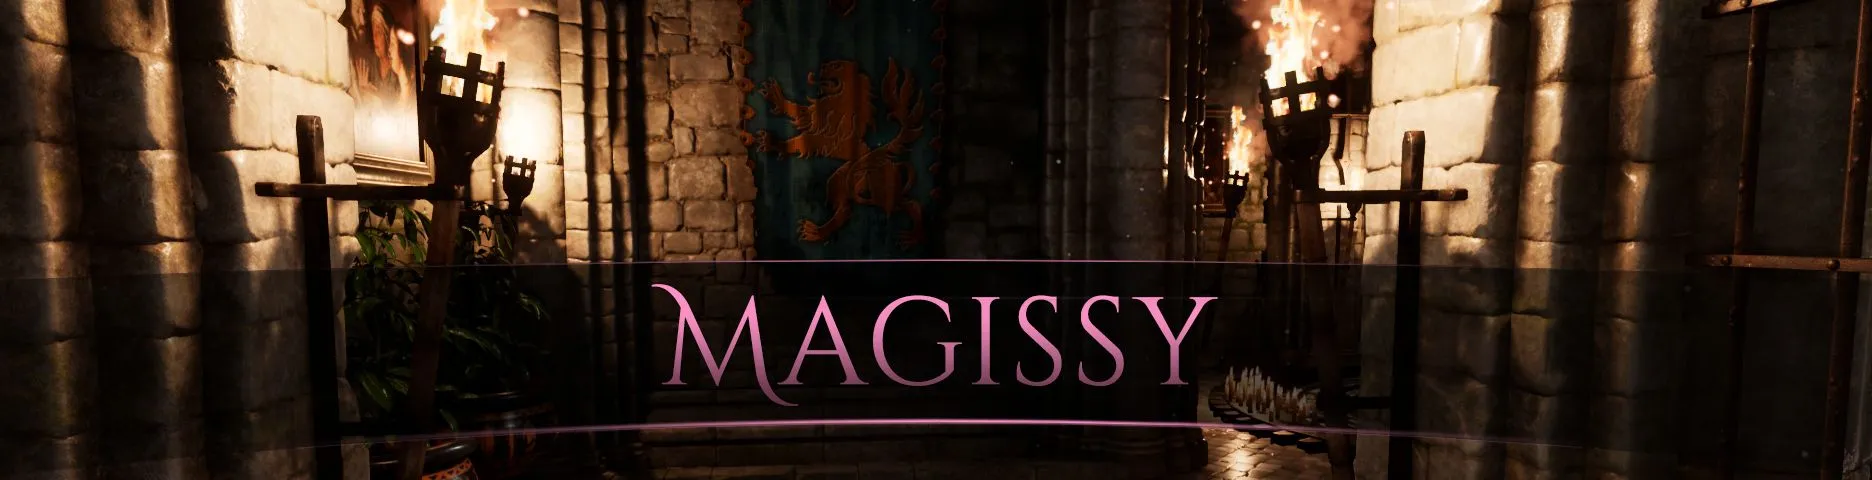 The Magissy [v0.0.7] main image